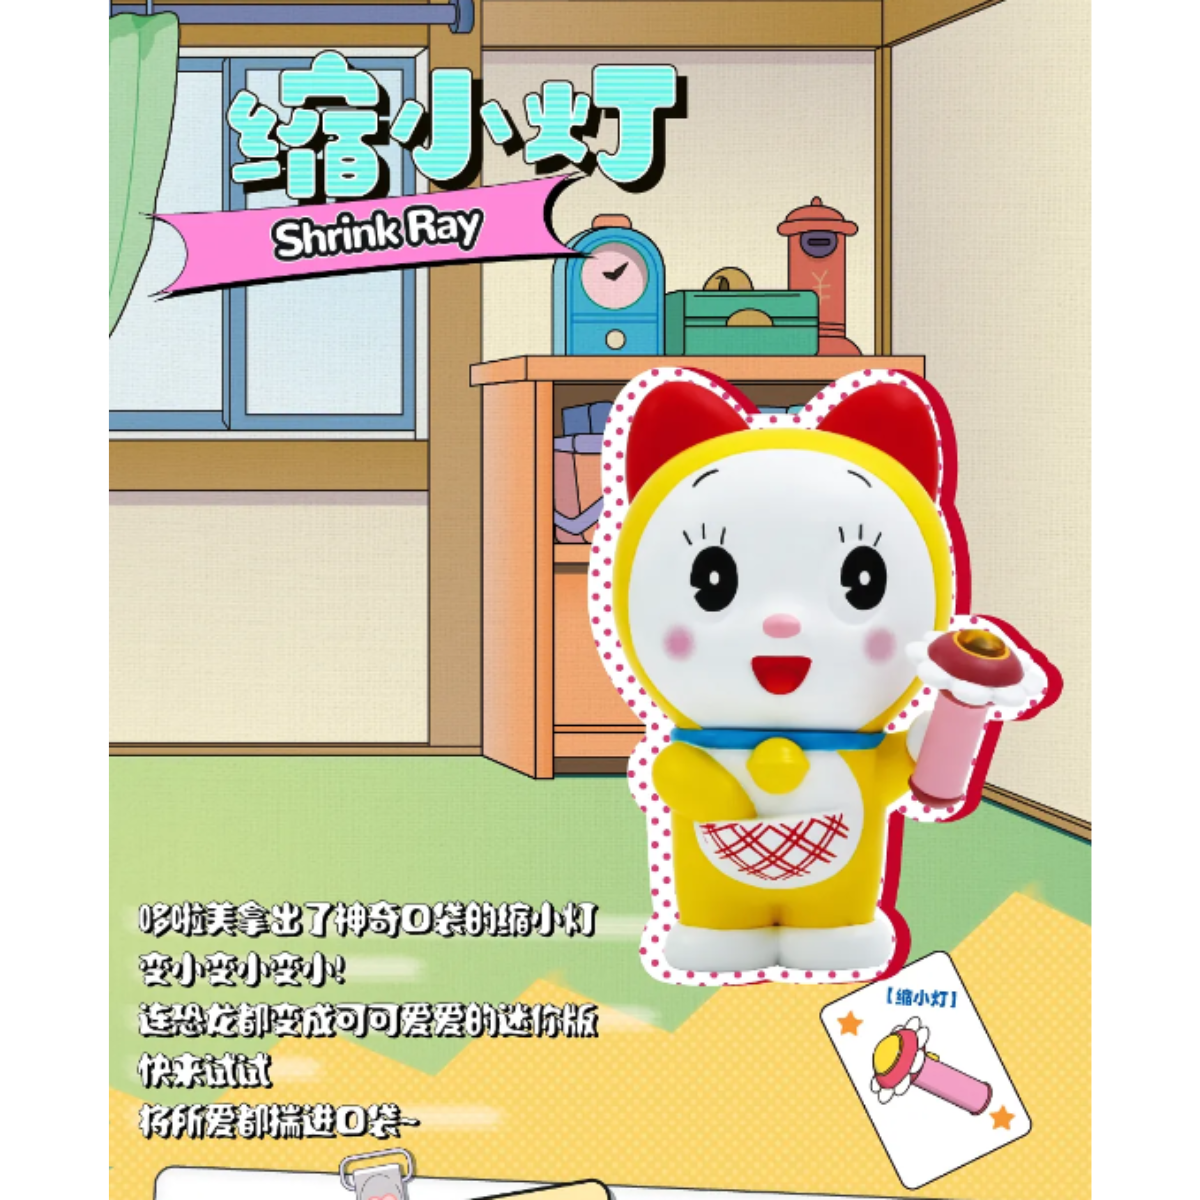 52Toys x Doraemon Secret Gadgets Series-Single Box (Random)-52Toys-Ace Cards &amp; Collectibles